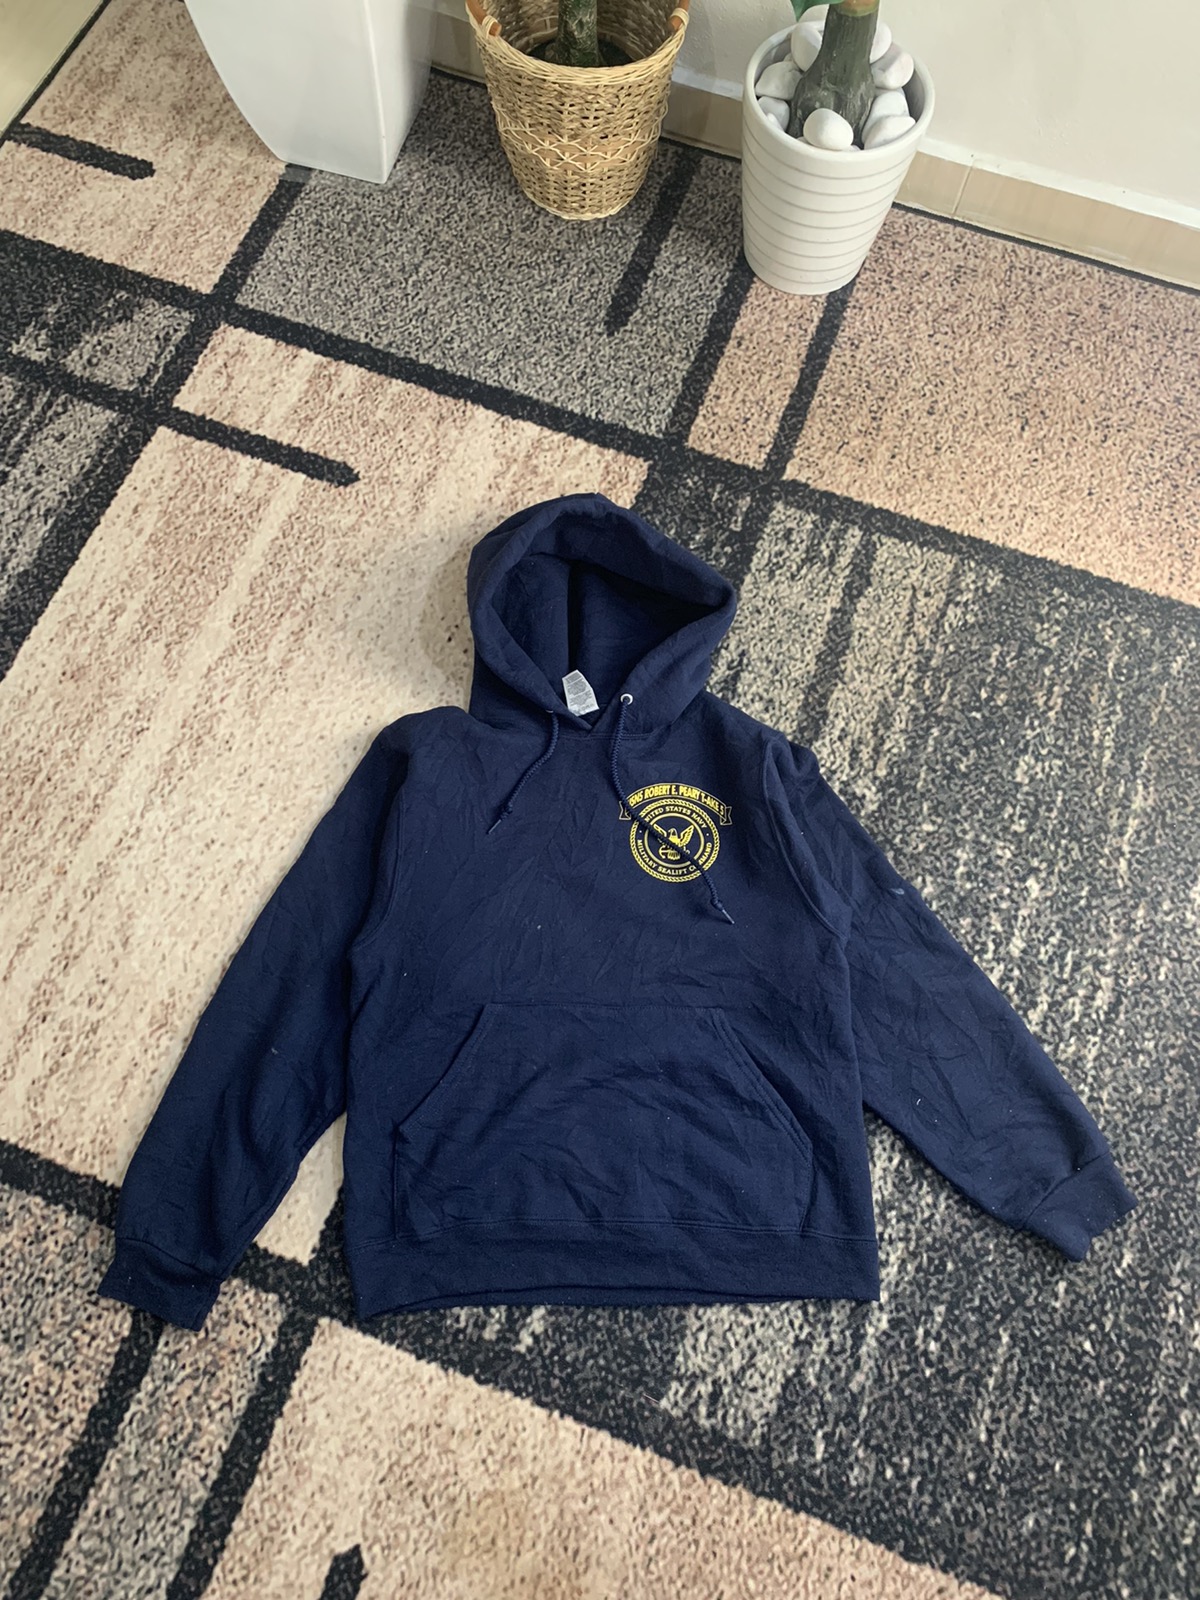 Rare - United states navy hoodies - 1